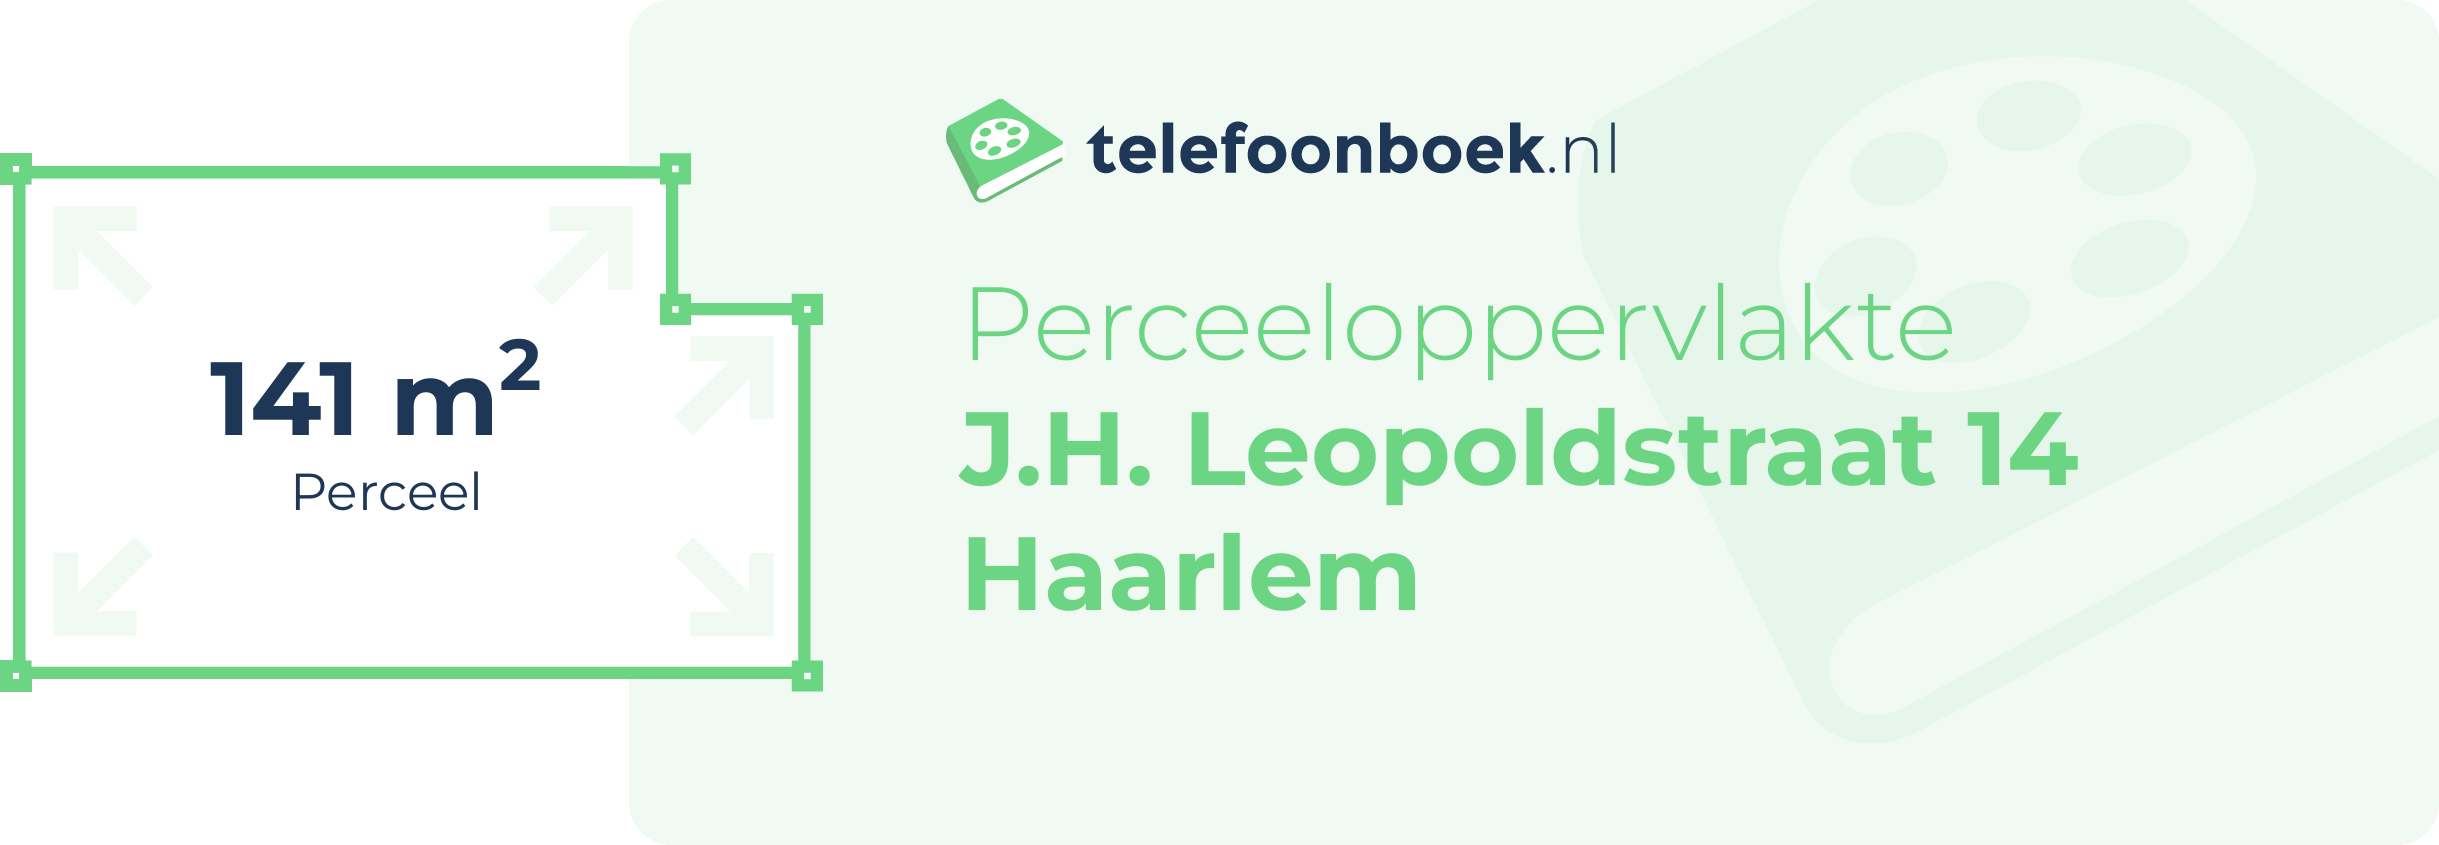 Perceeloppervlakte J.H. Leopoldstraat 14 Haarlem